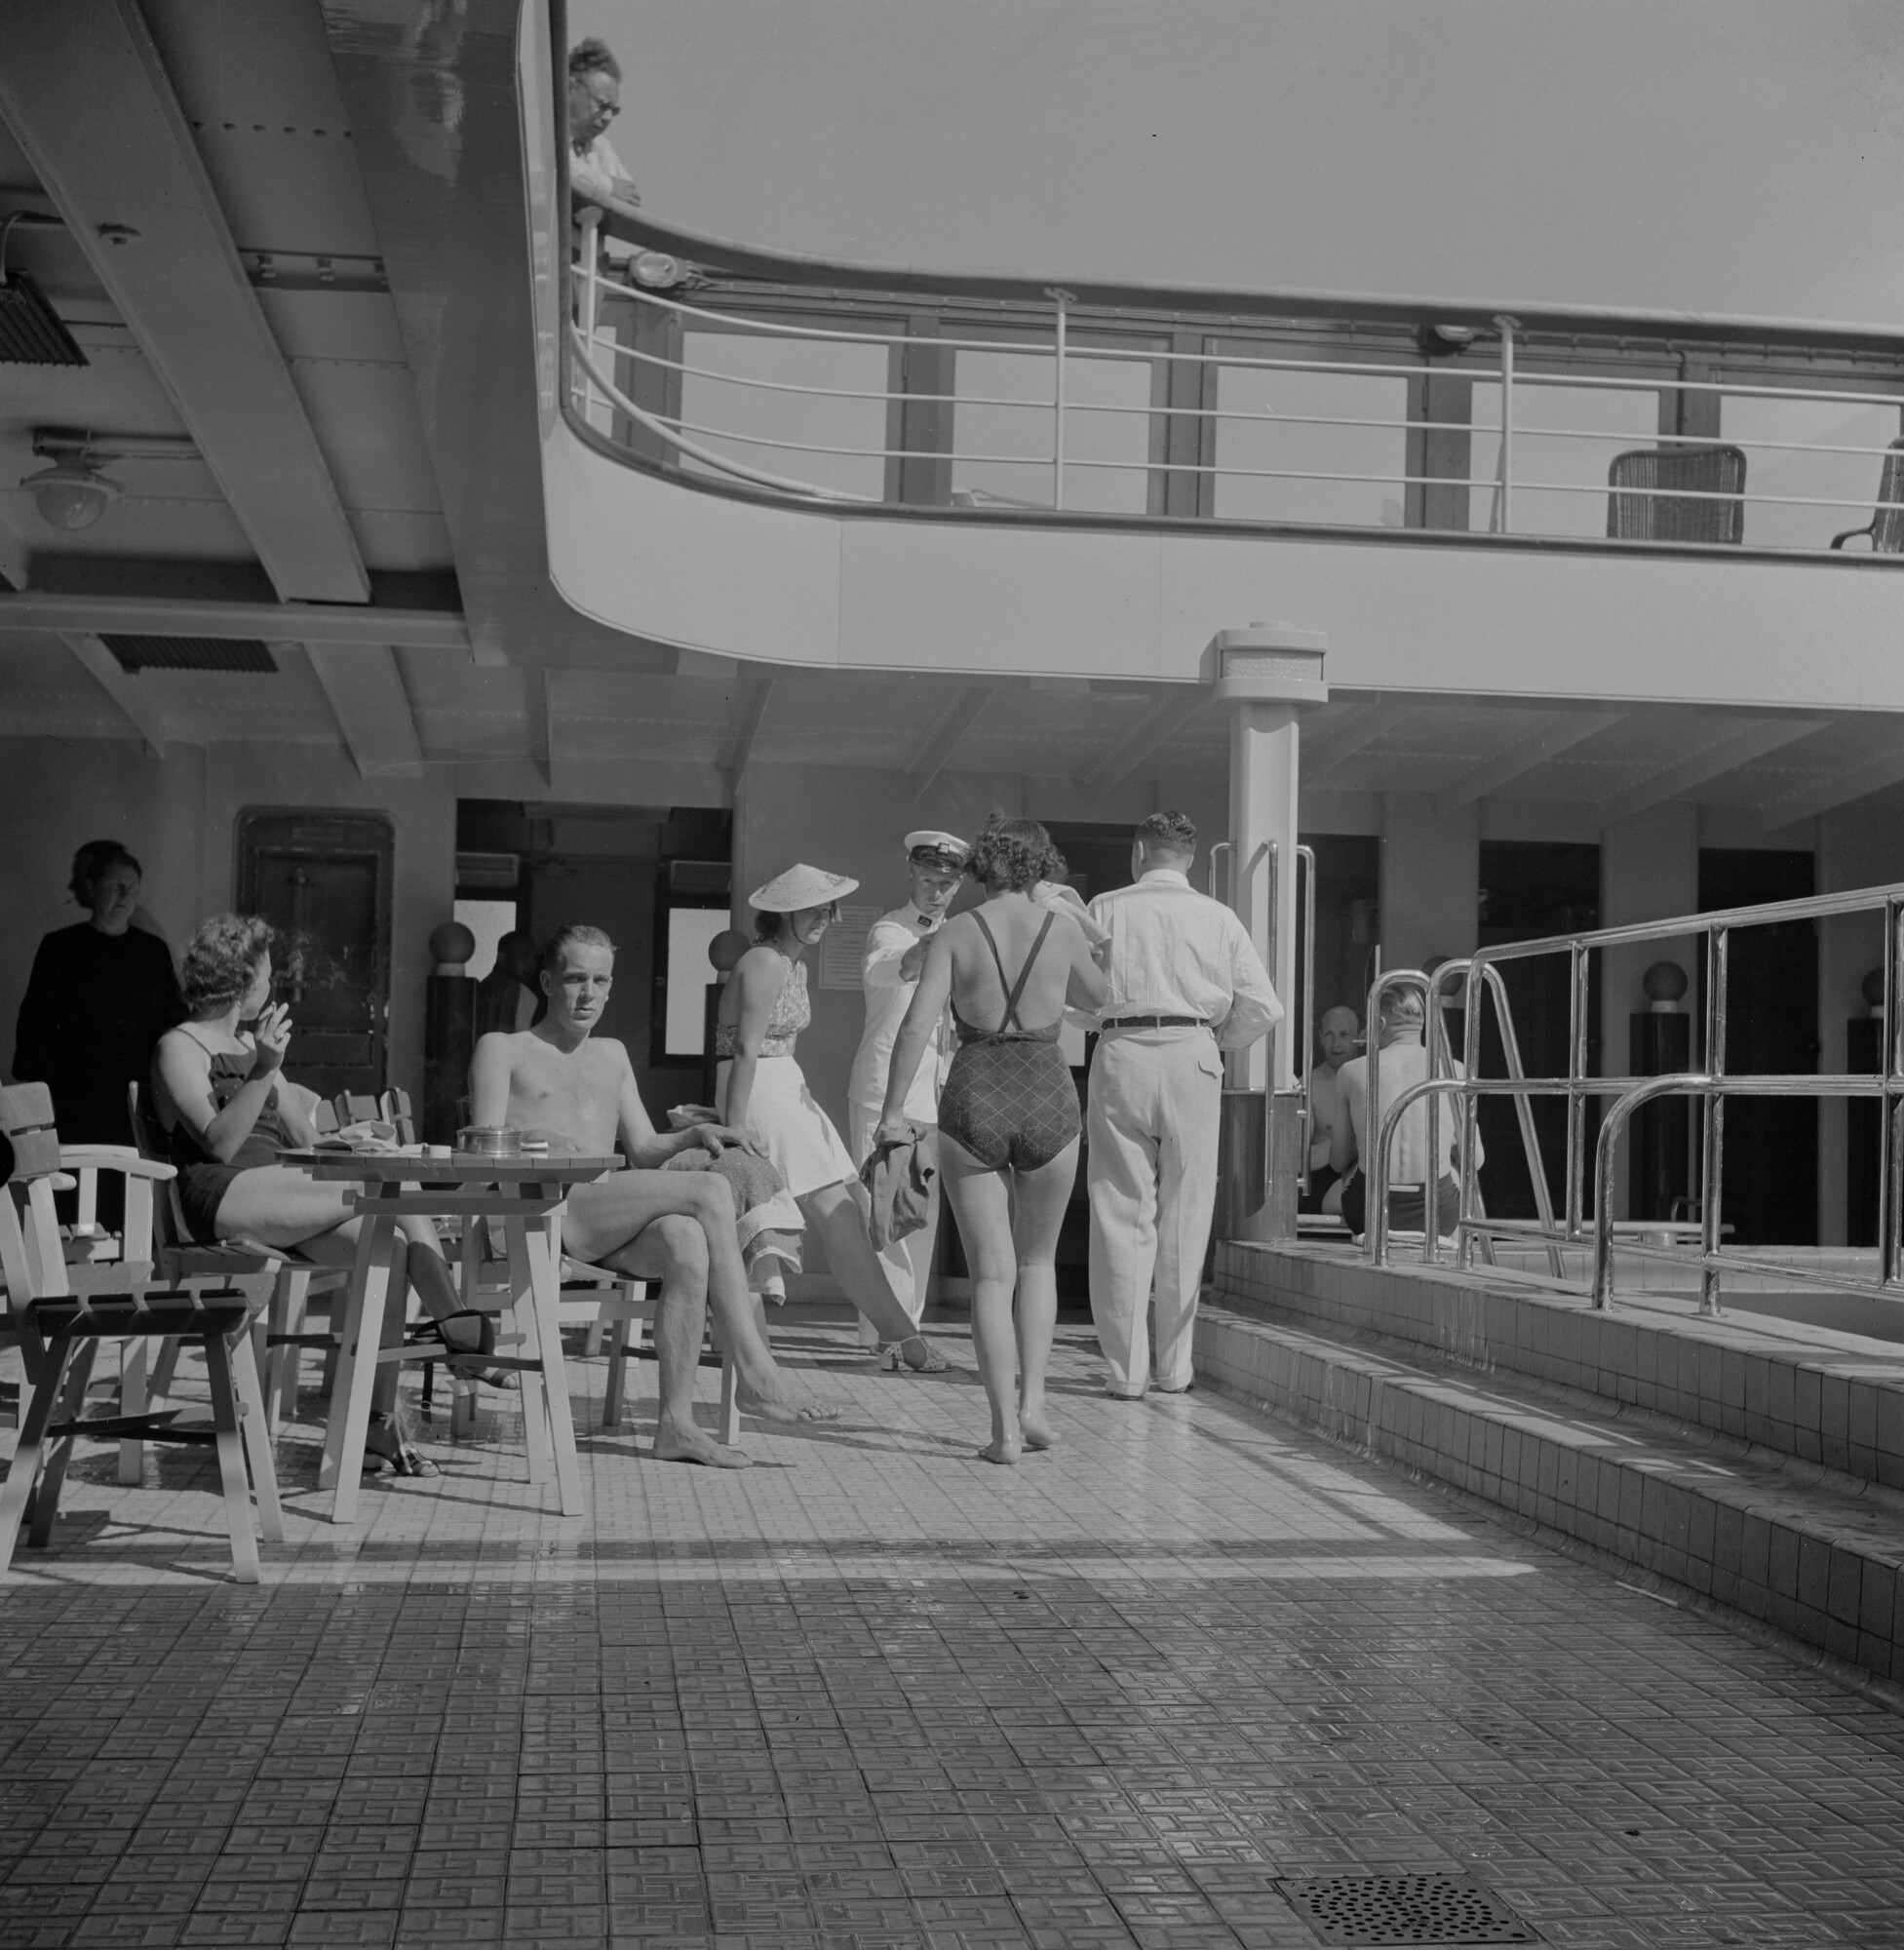 2015.1588; Negatief van passagiers rond het oude zwembad van ms. Oranje; negatief